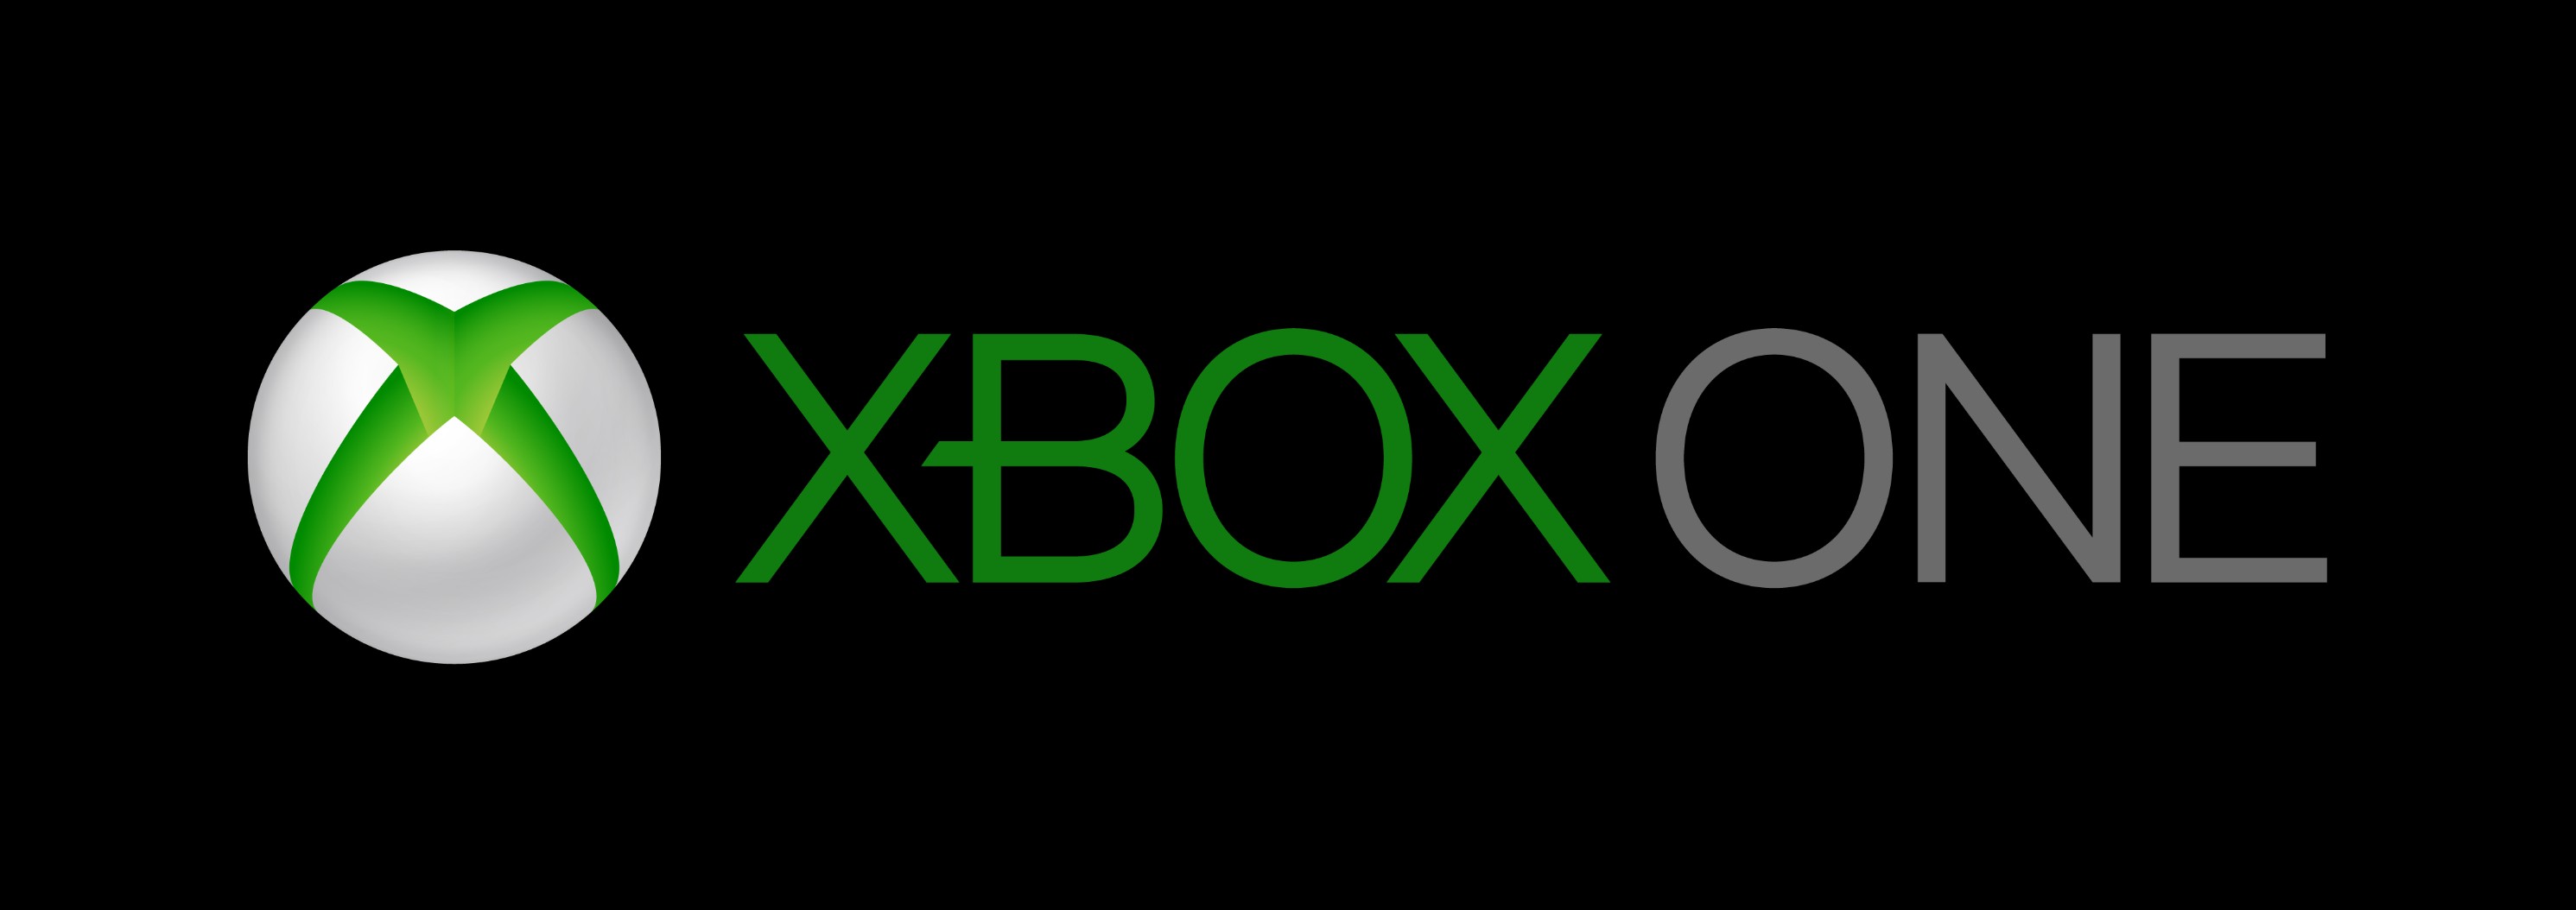 Xbox one Logos